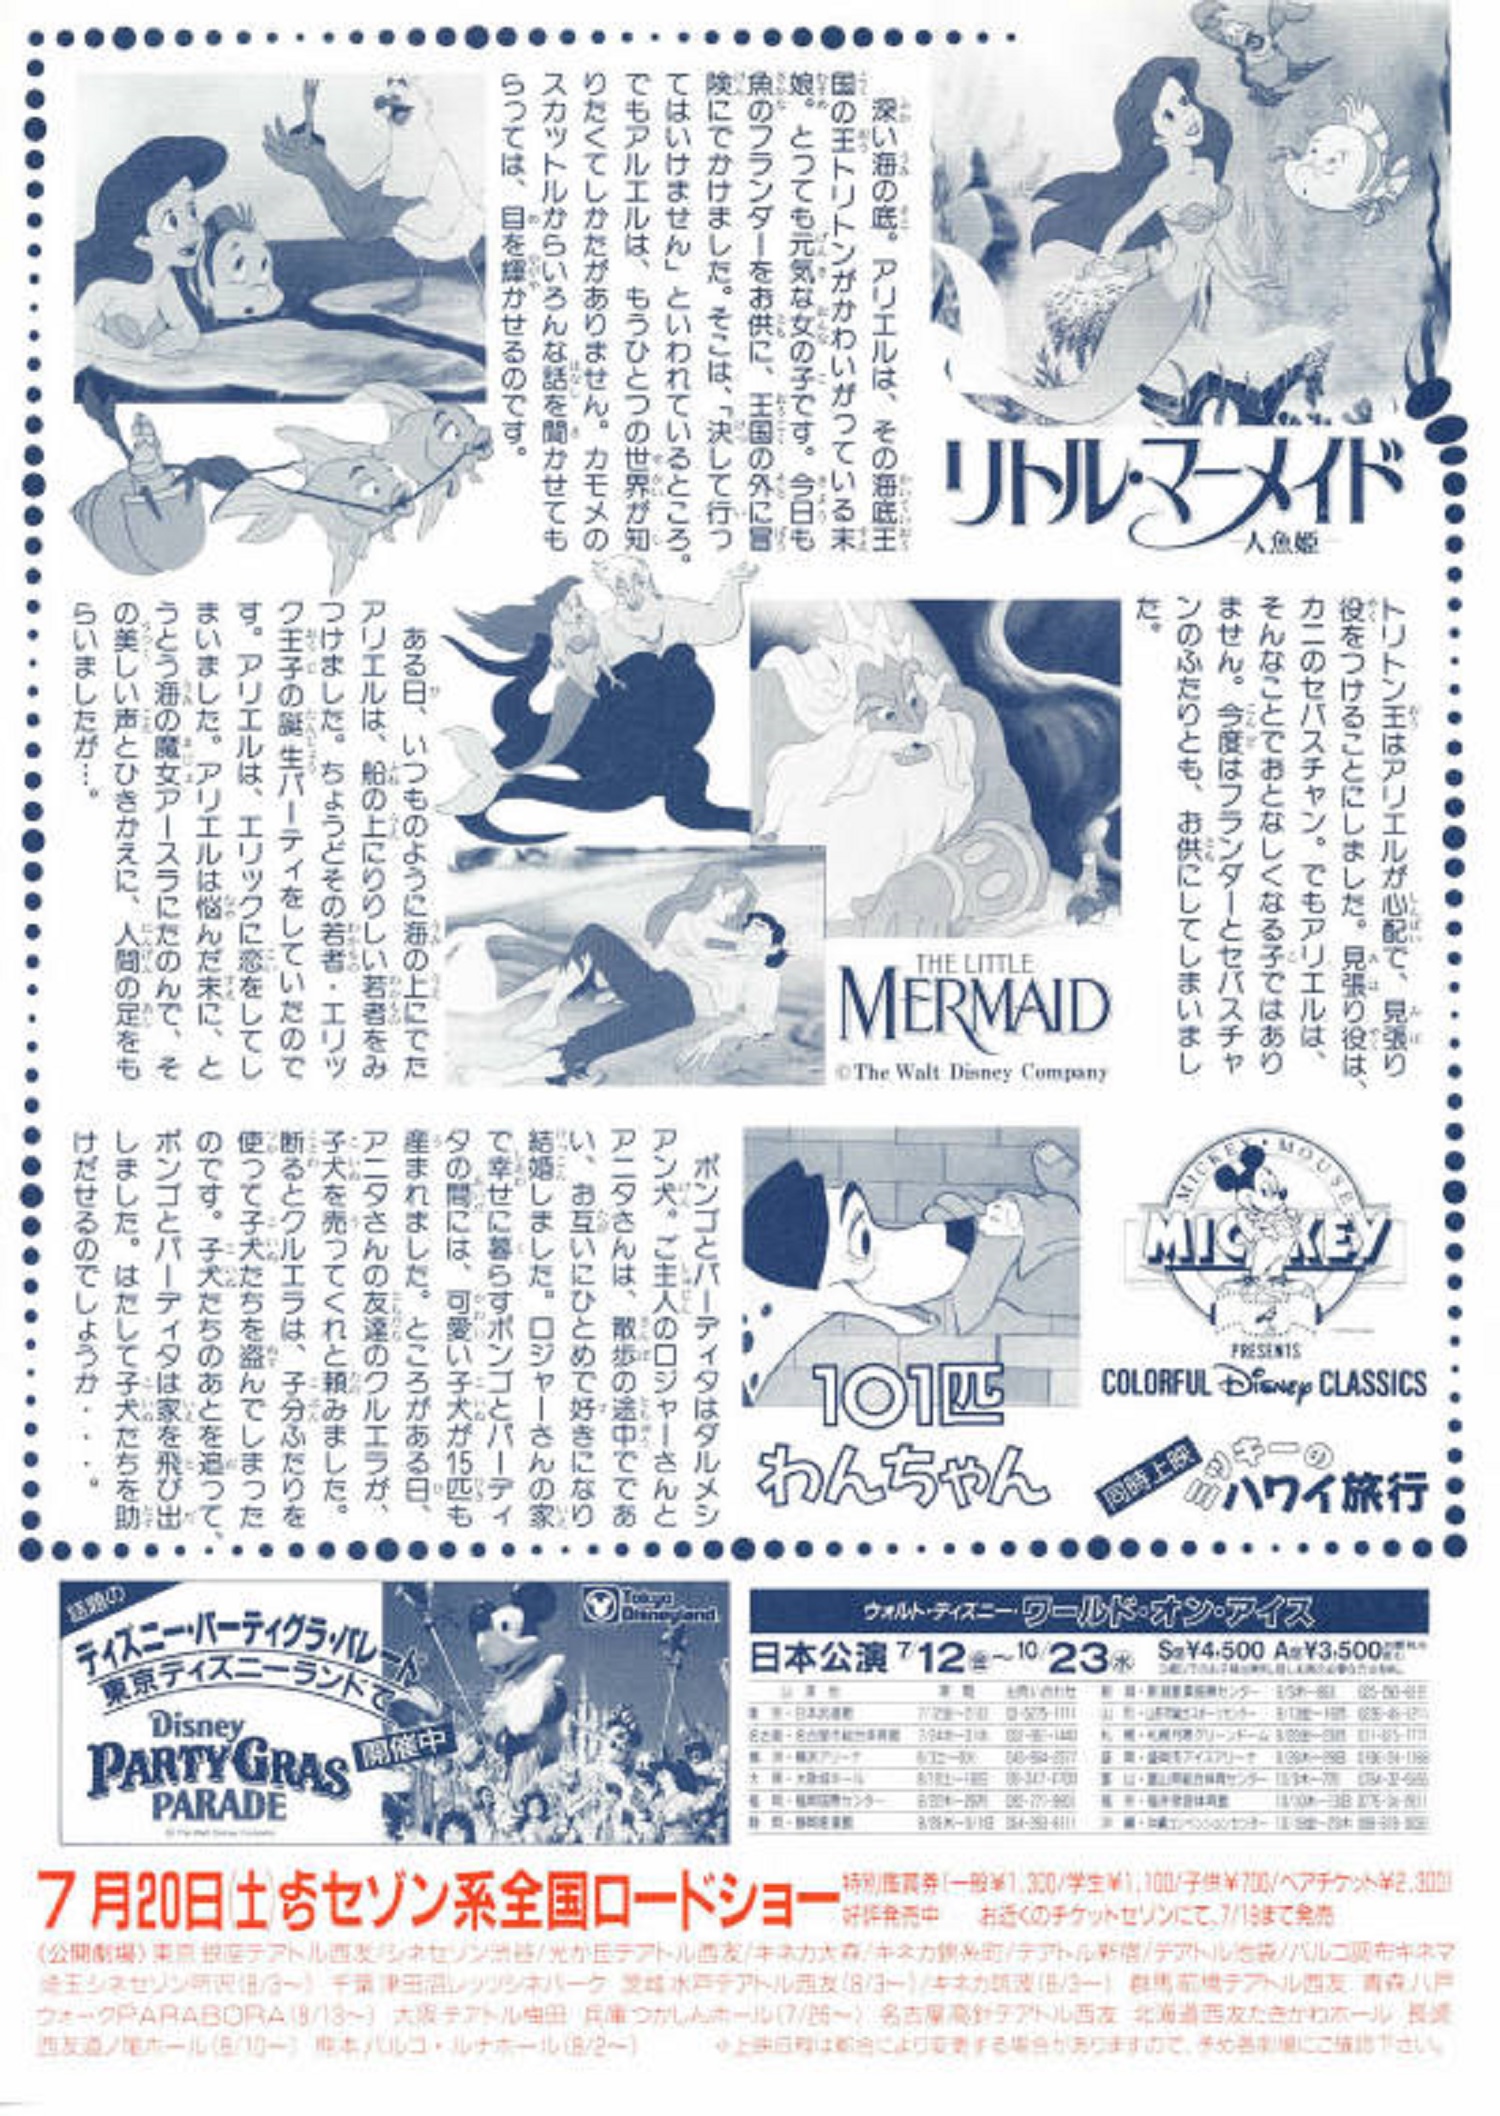 リトル マーメイド The Little Mermaid Japanese Voice Cast Willdubguru